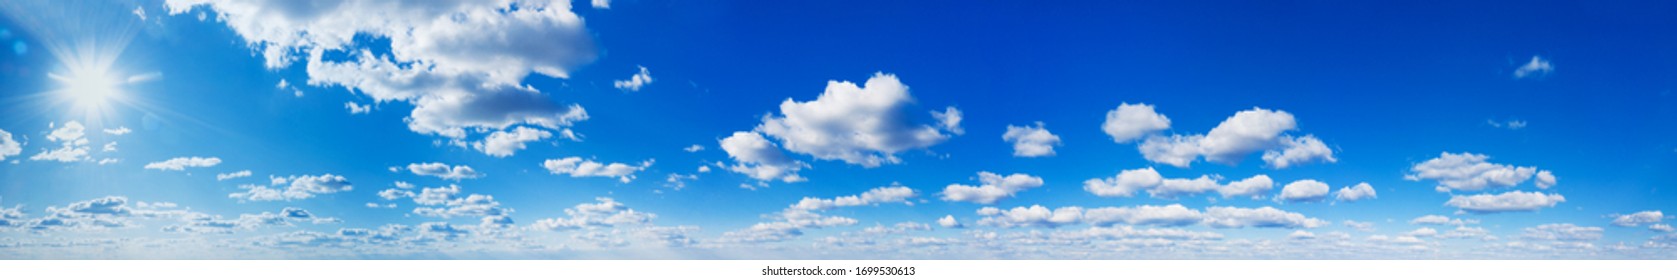 Panorama Blauer Himmel und weiße Wolken. Bfluffige Wolke auf blauem Hintergrund